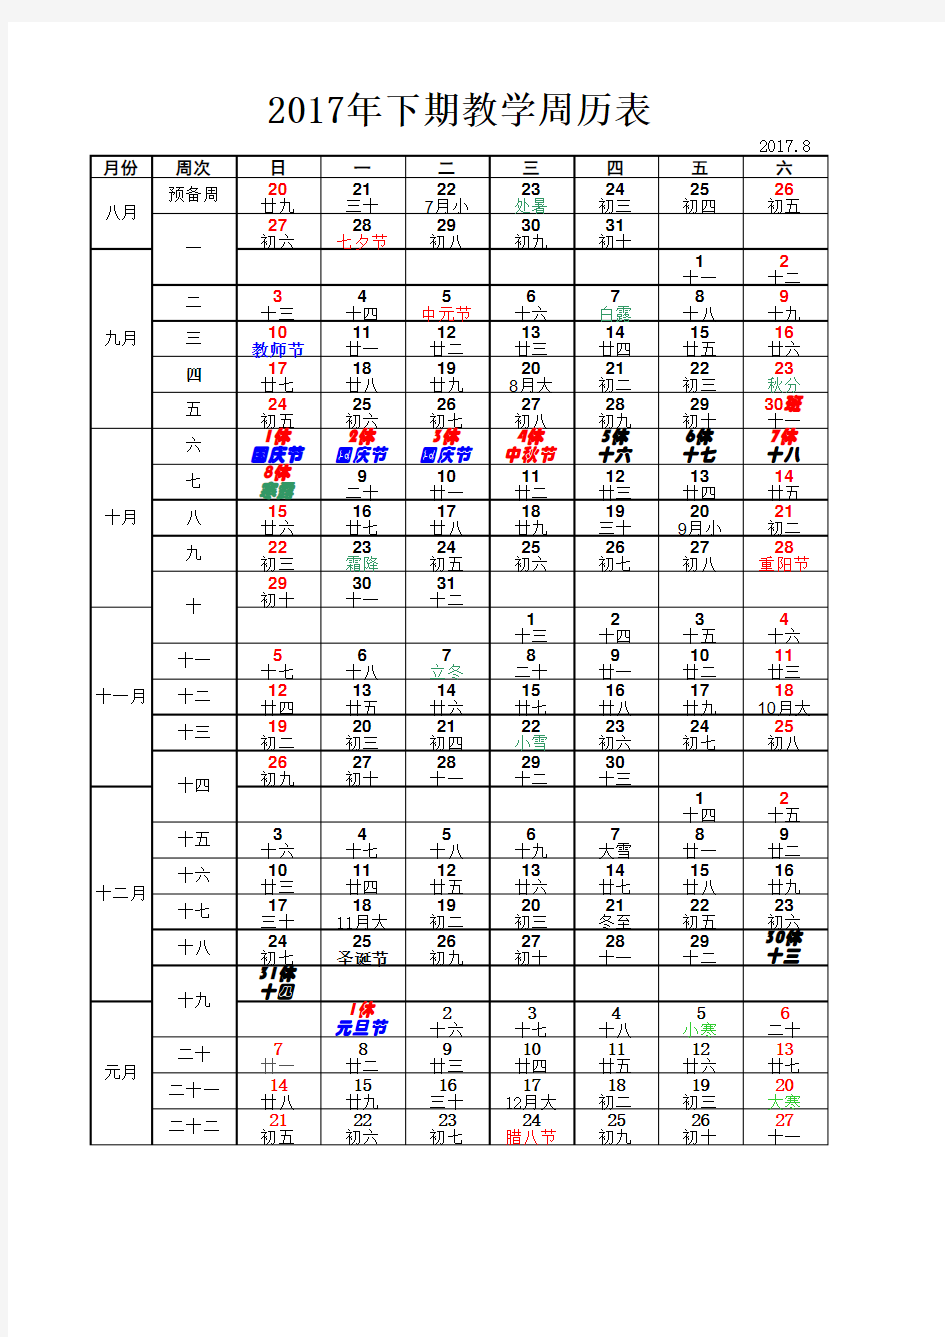 2017年下期教学周历表